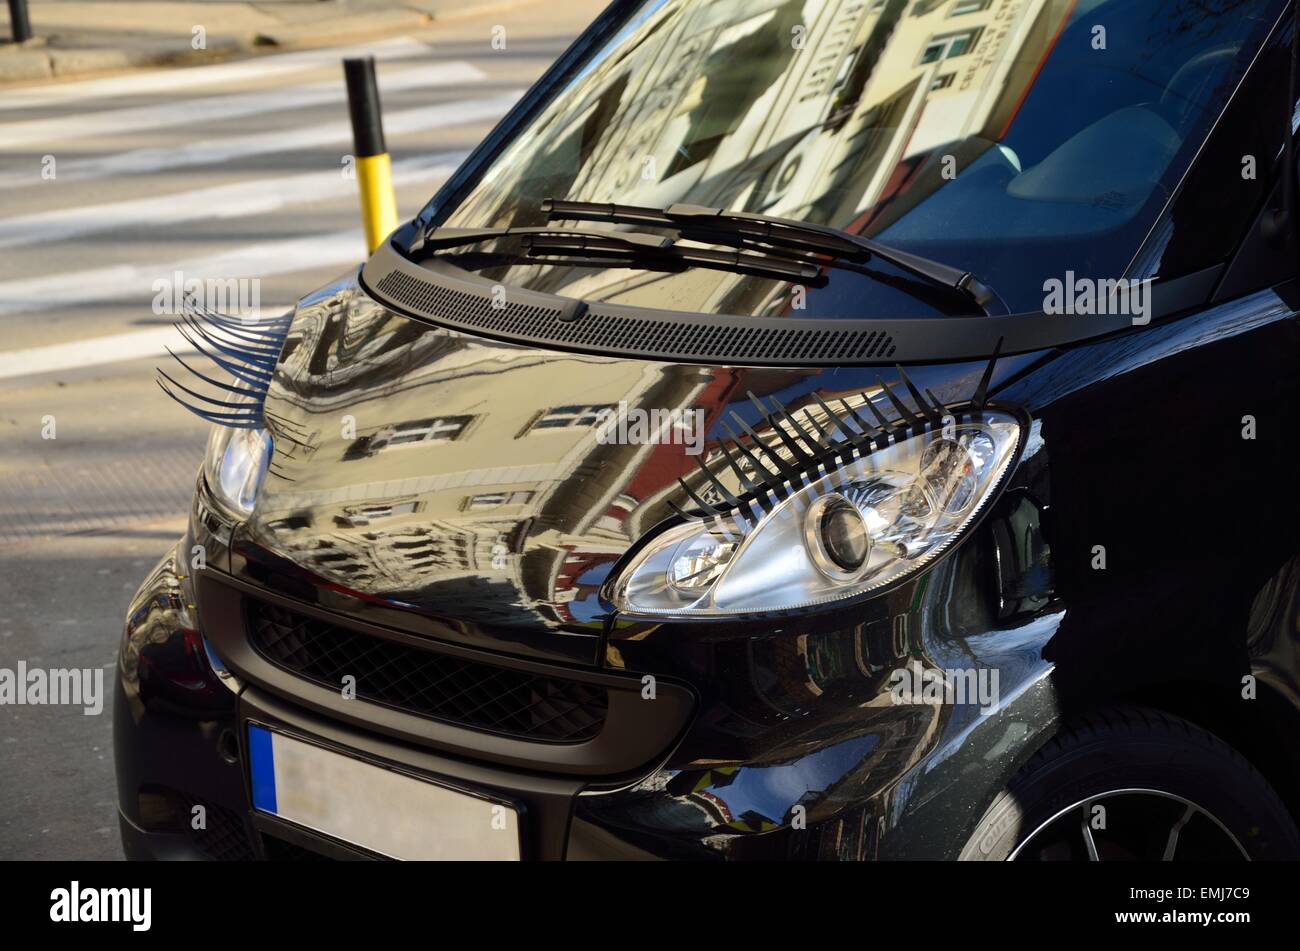 Car with eyelashes on headlights,as feminine symbol Stock Photo - Alamy